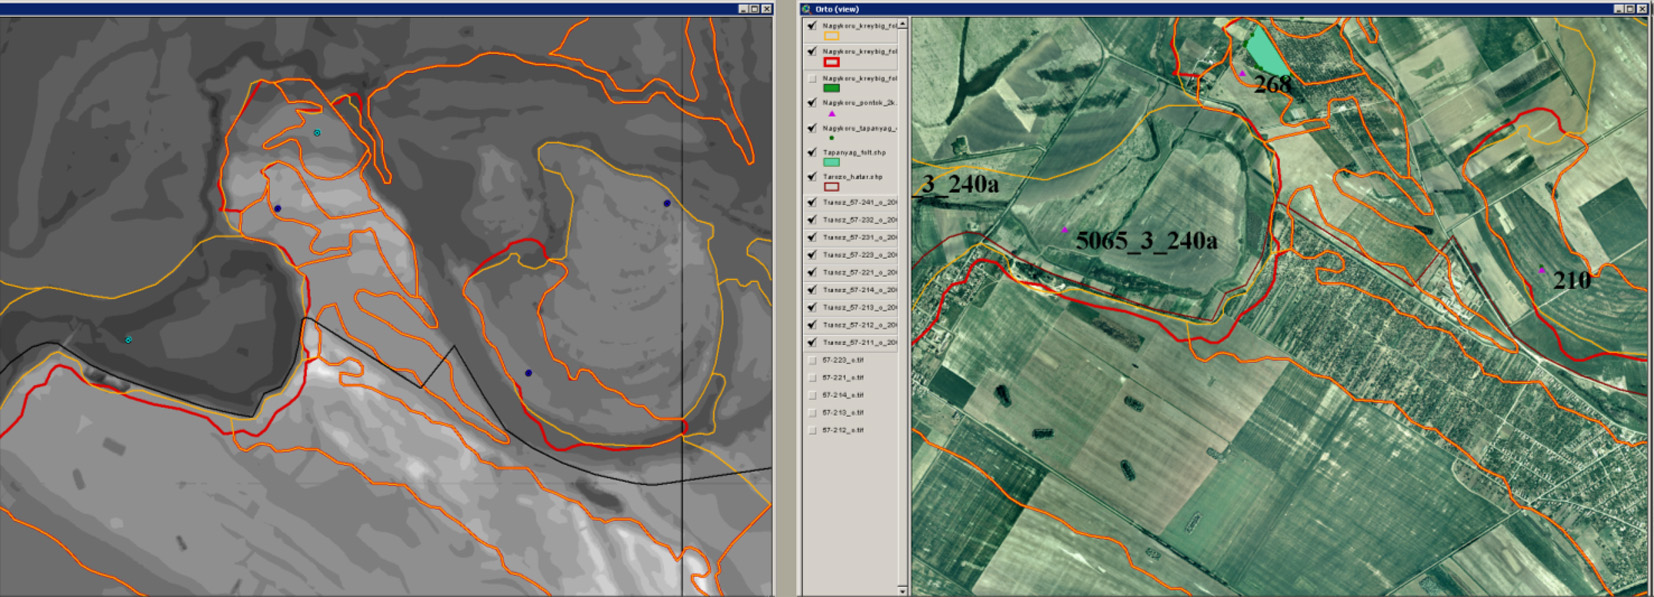 Kreybig-féle talajismereti térképezés folthatárainak pontosítása domborzatmodell és ortofotó alapján (forrás: MTA TAKI)